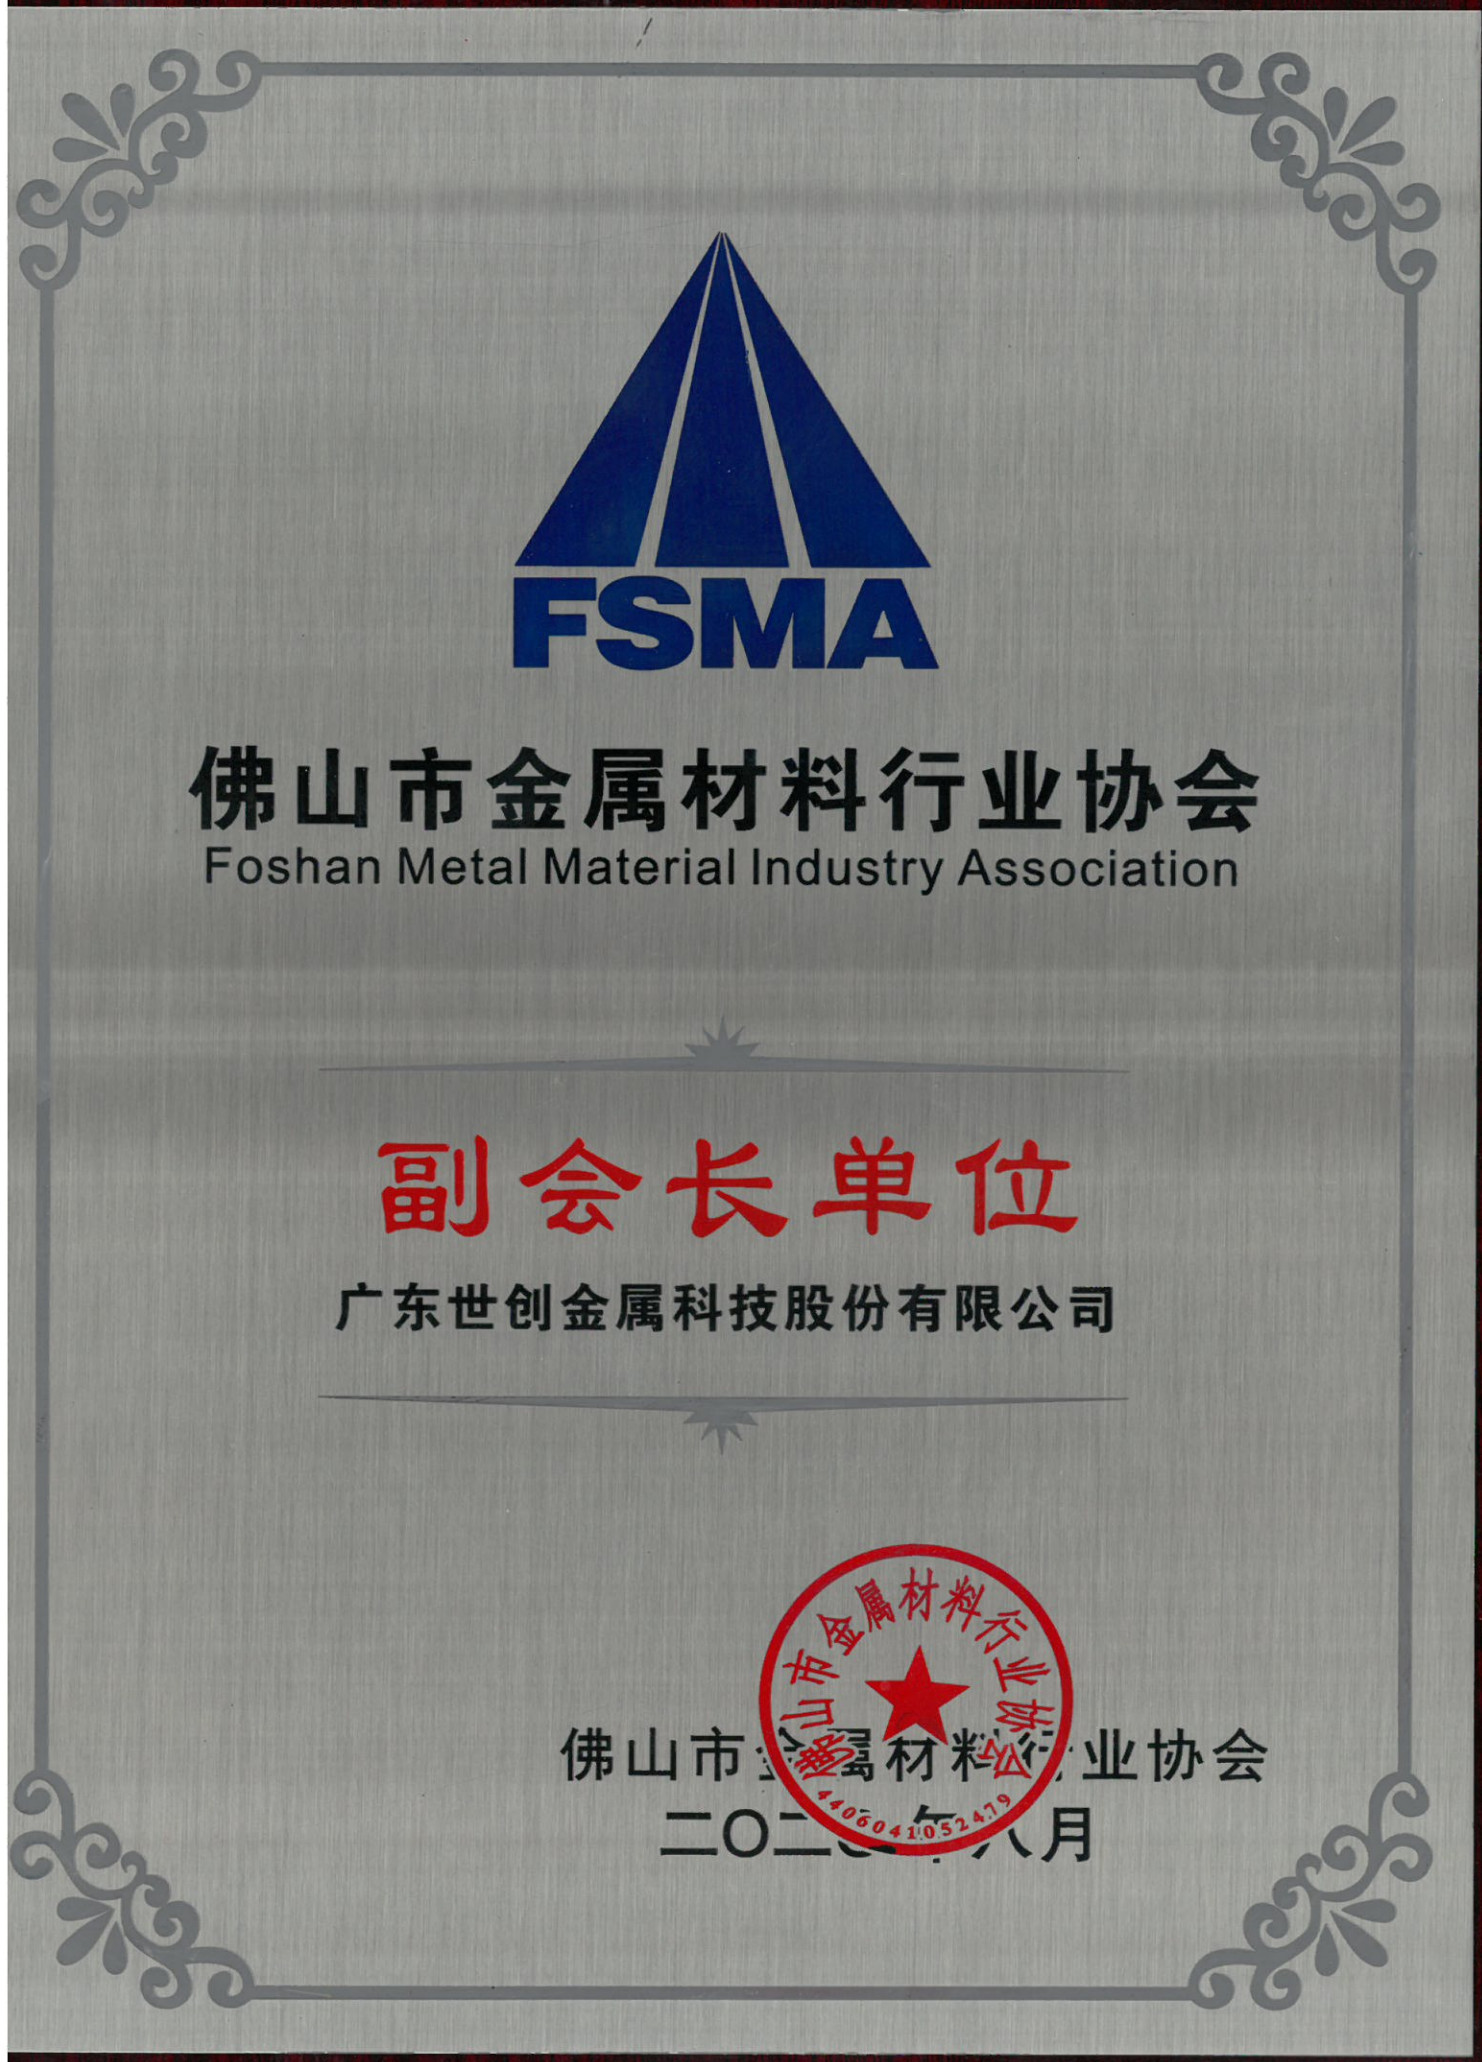 Vice-président membre de Foshan Metal Materials Industry Association